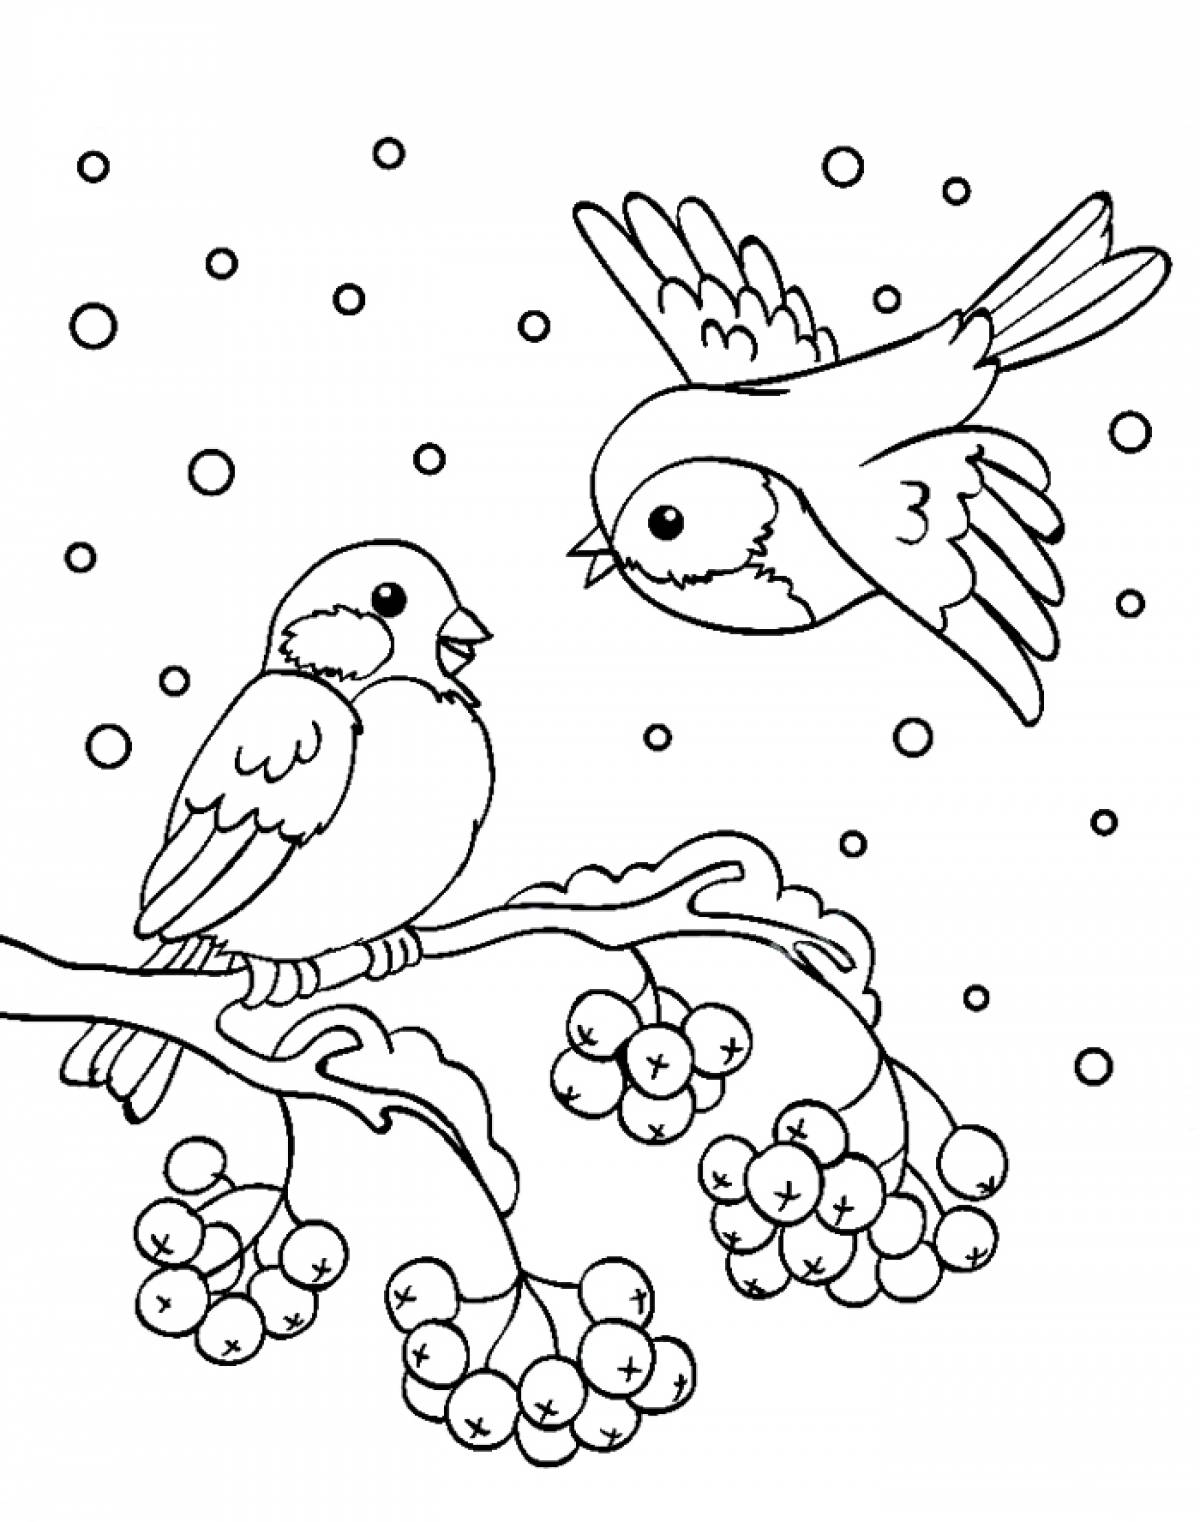 Как нарисовать снегиря фломастерами, карандашами или красками - Лайфхакер